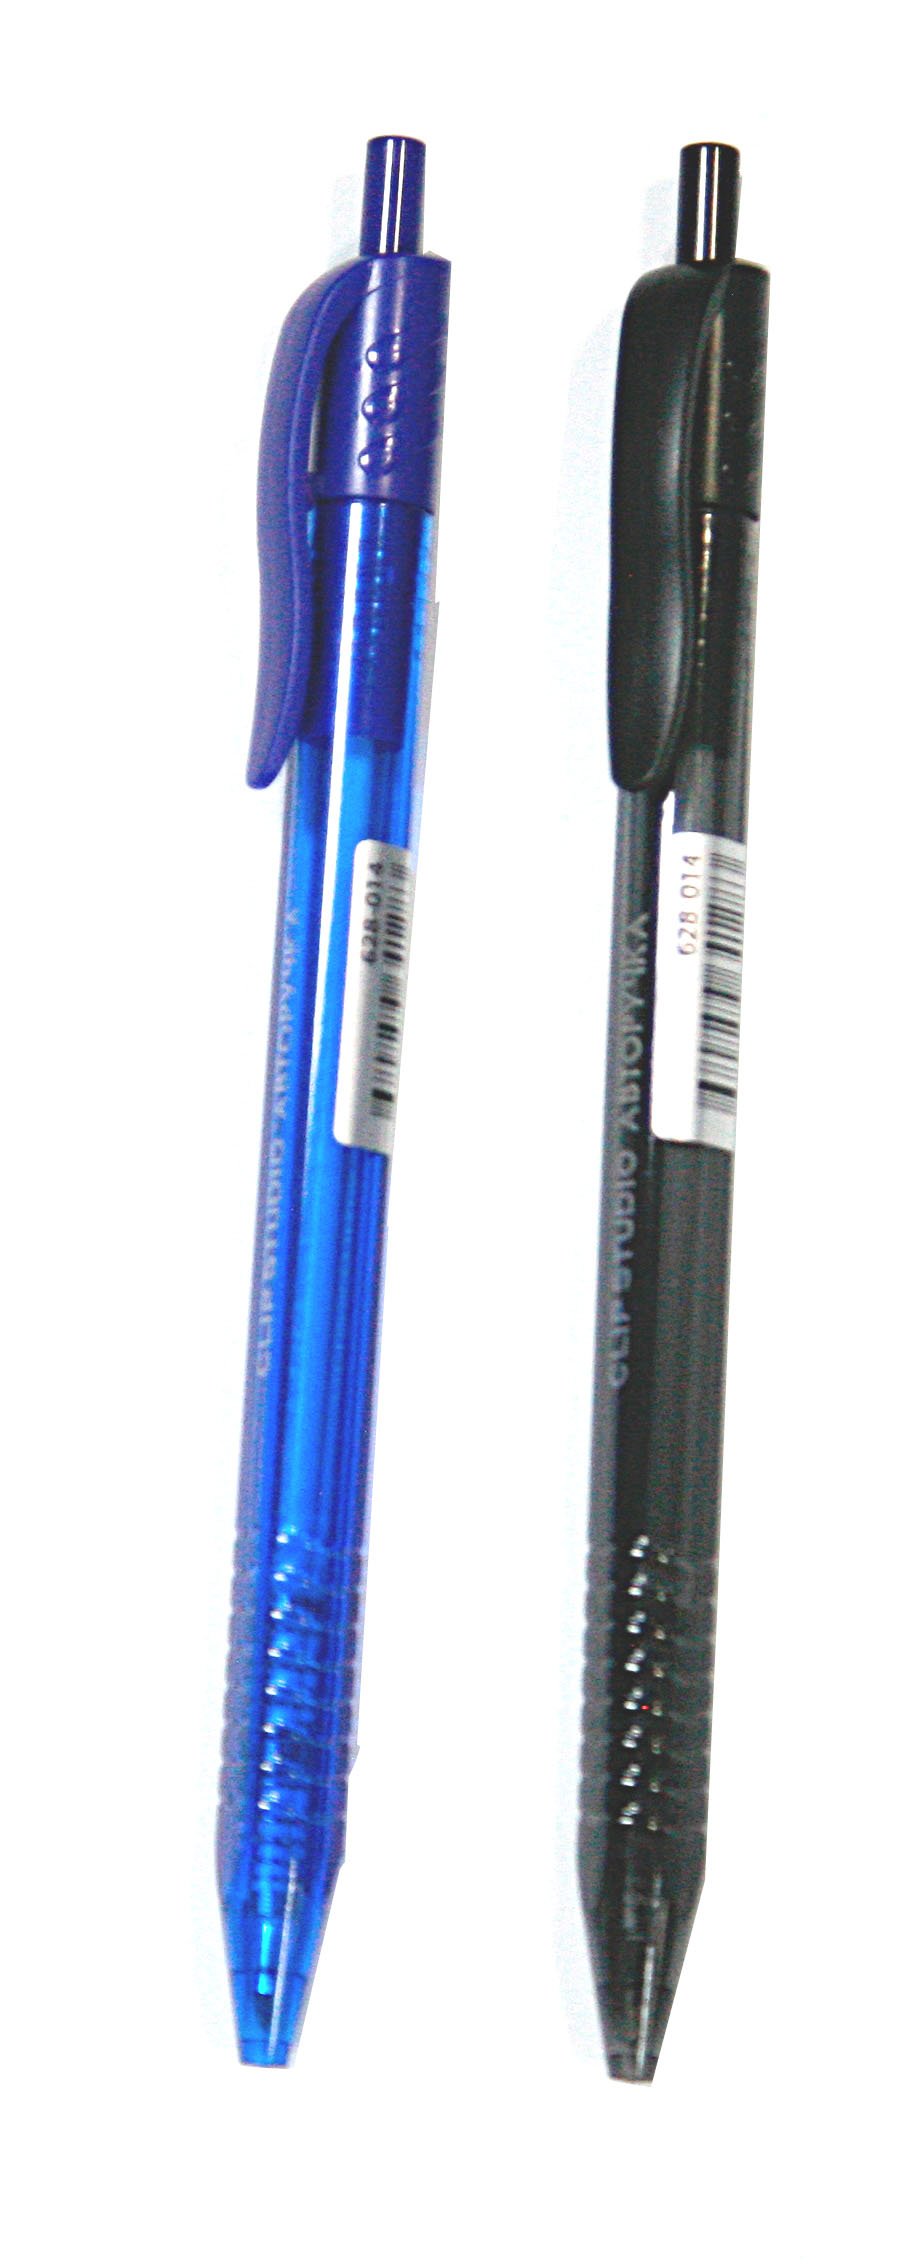 Авторучка шариковая синяя, тонированный цвет, трехгранный корпус, ClipStudio (2 шт).